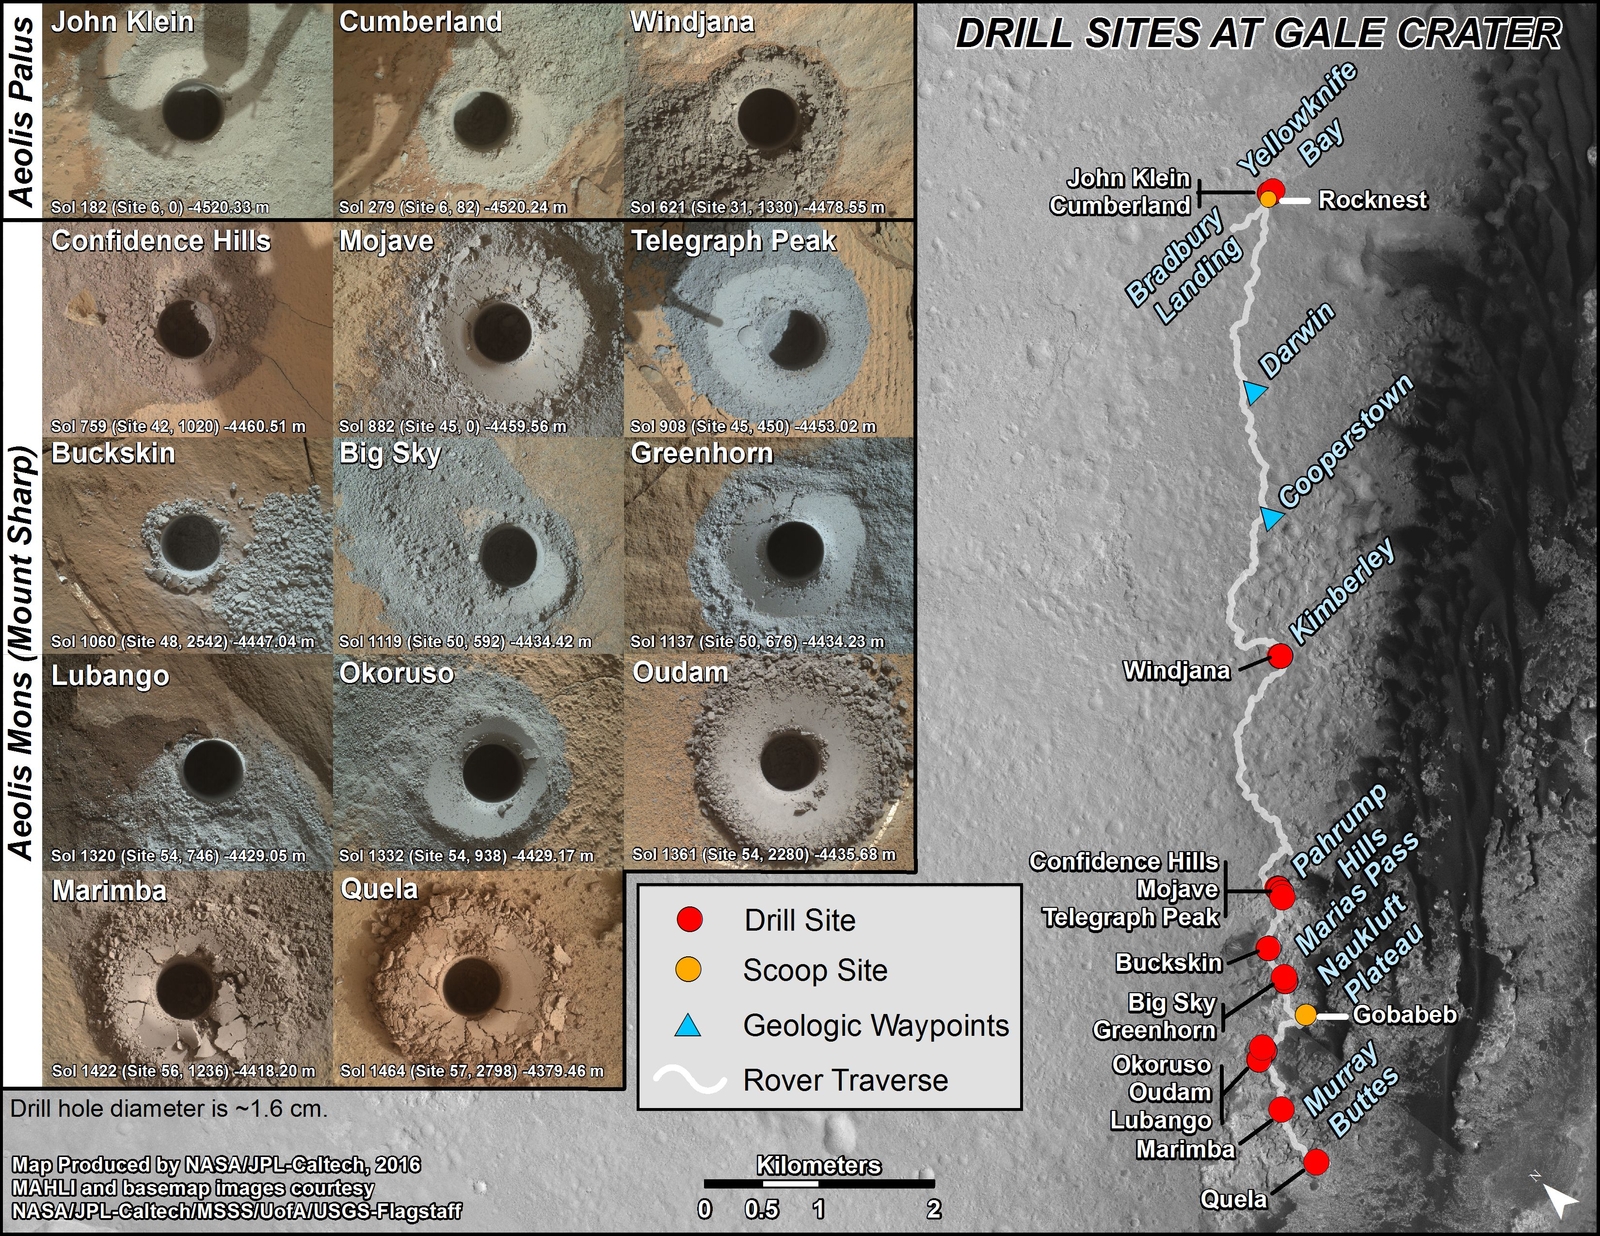 Curiosity's Rock or Soil Sampling Sites on Mars, Through September 2016